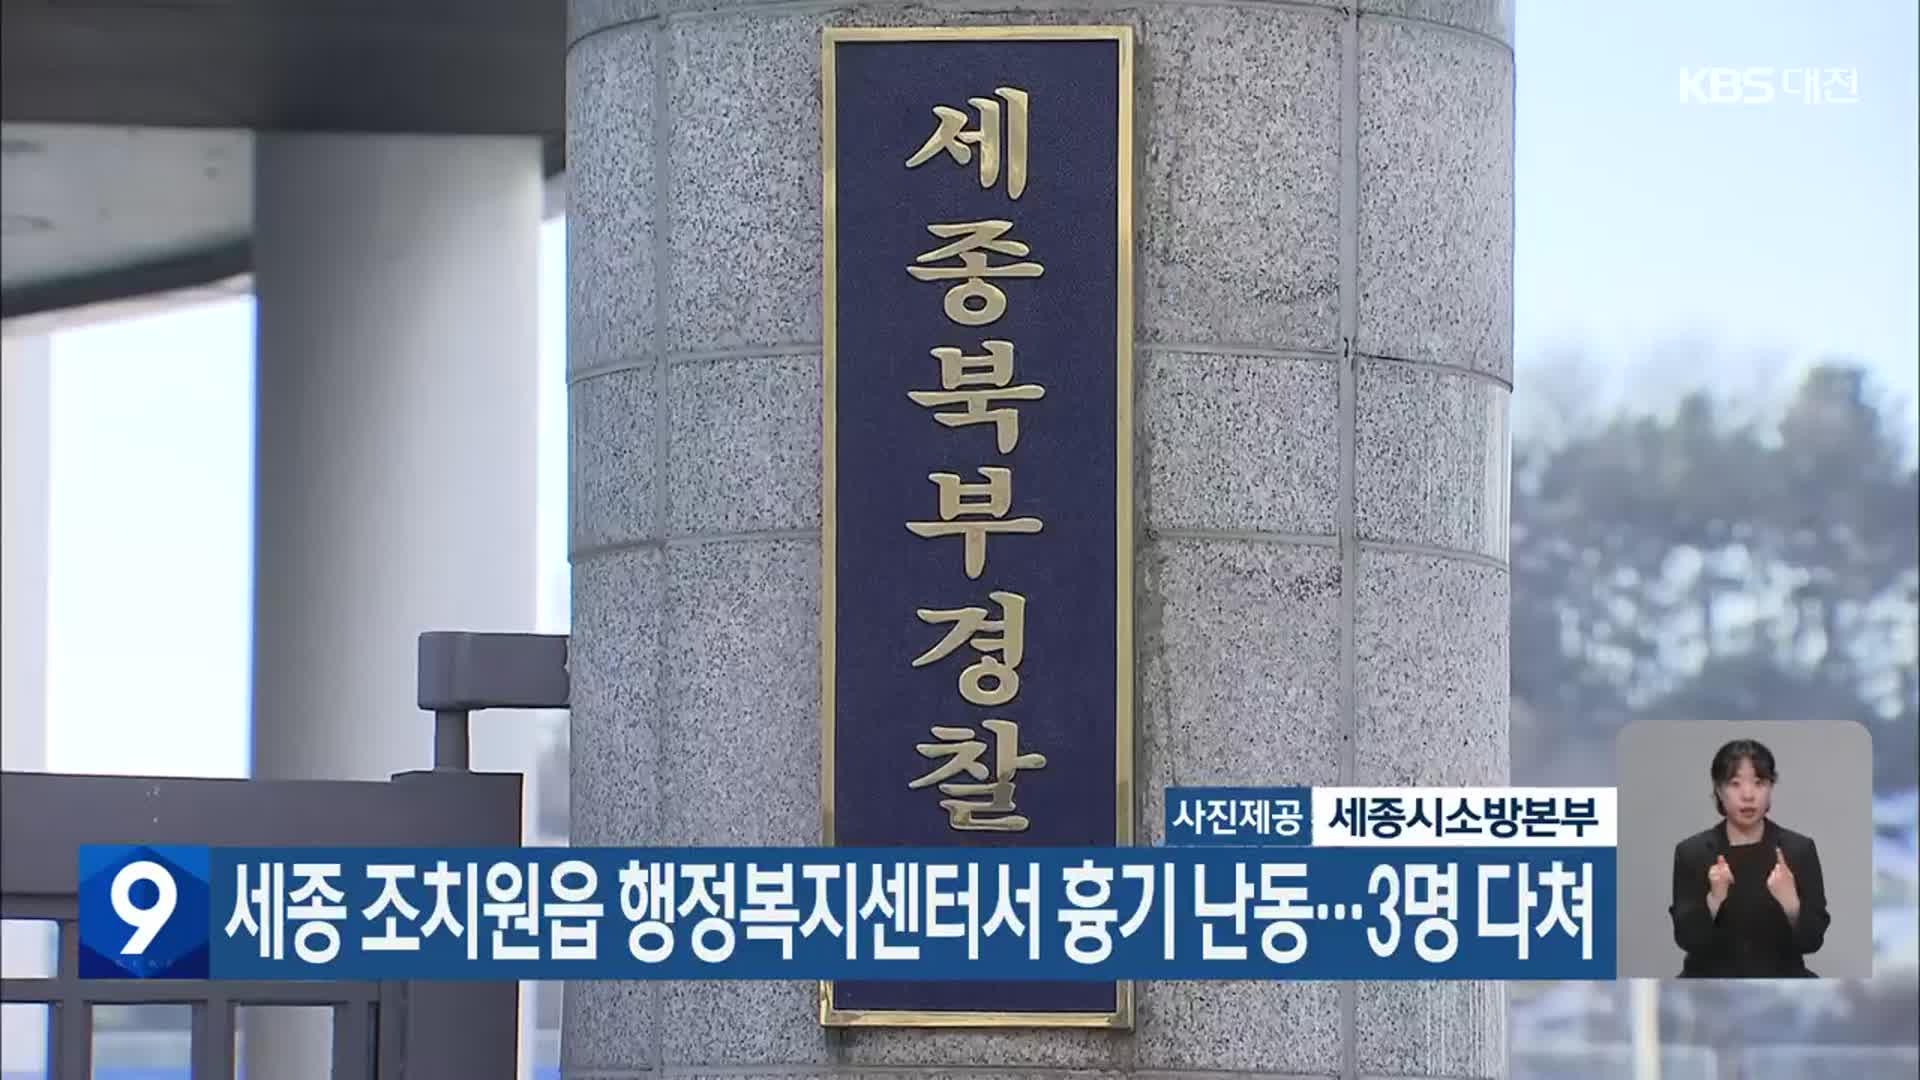 세종 조치원읍 행정복지센터서 흉기 난동…3명 다쳐